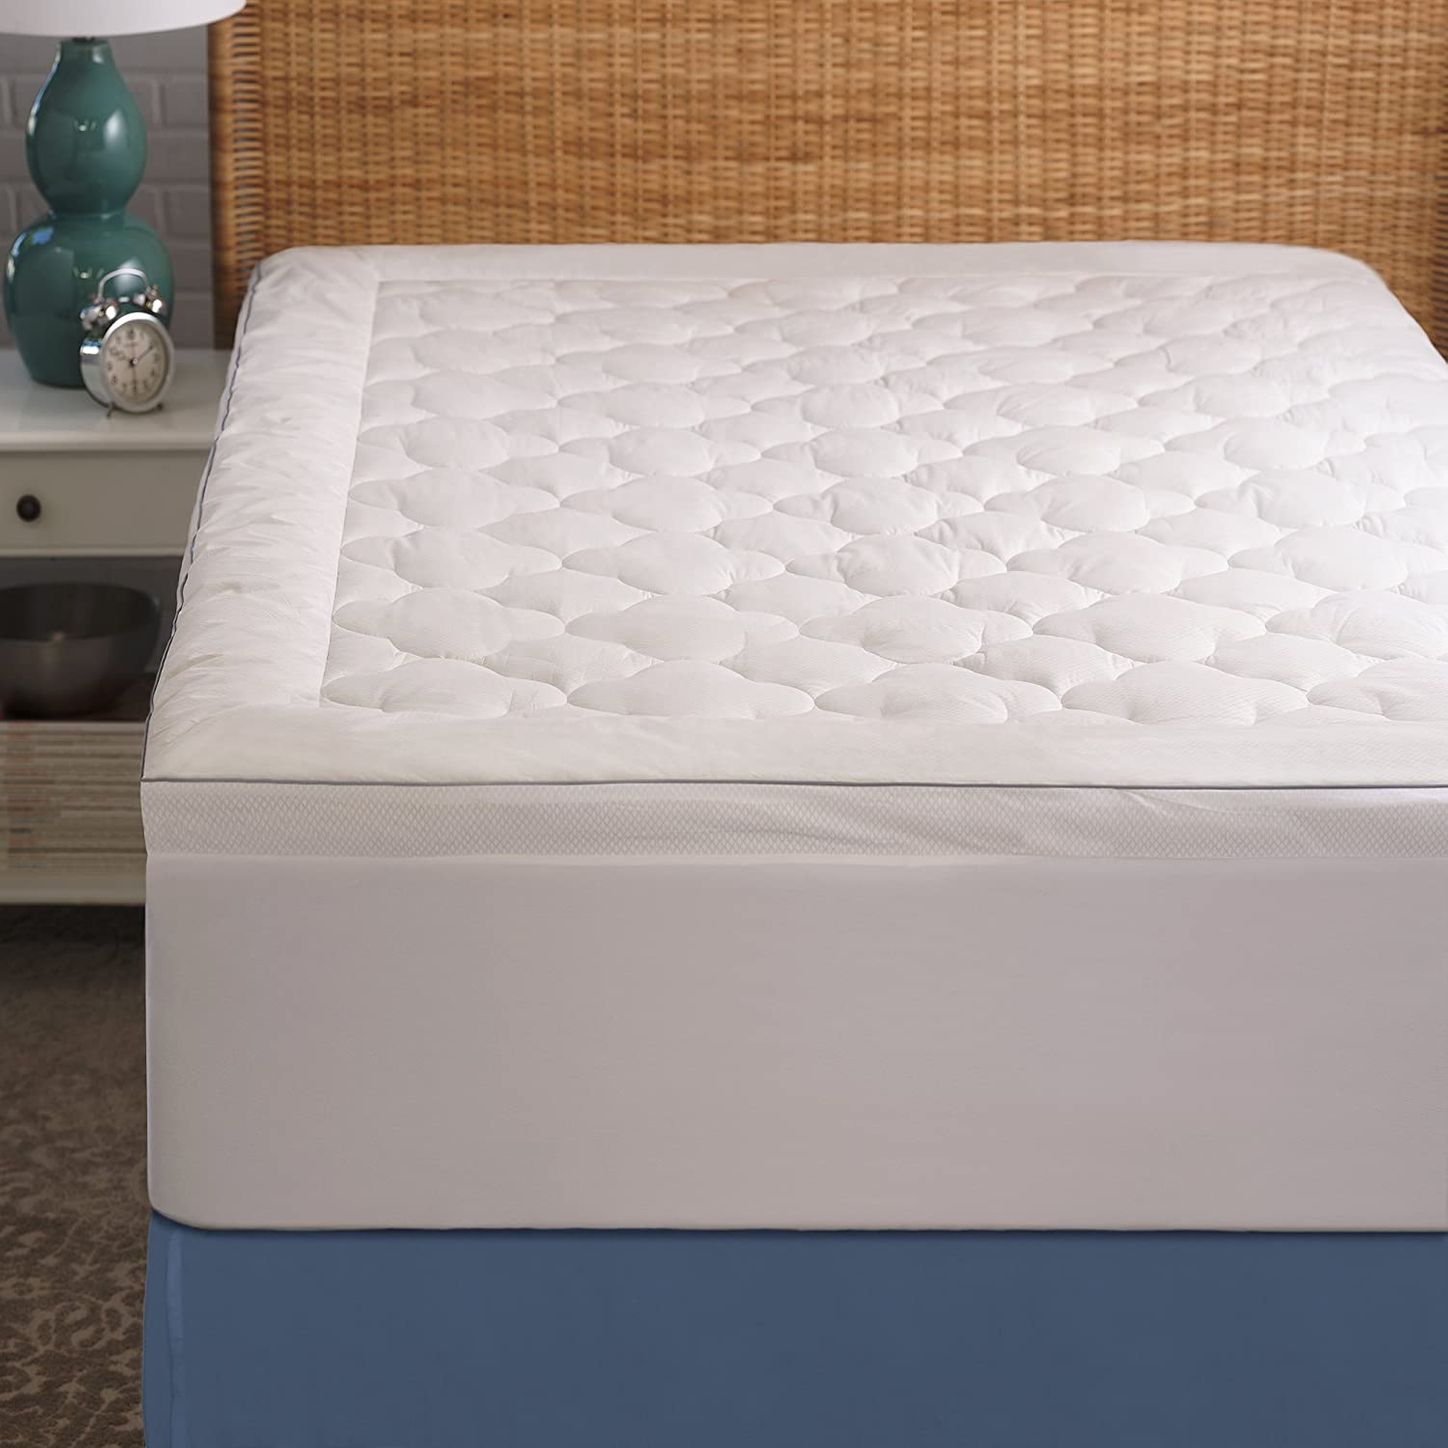 cooling mattress for adjustable frame